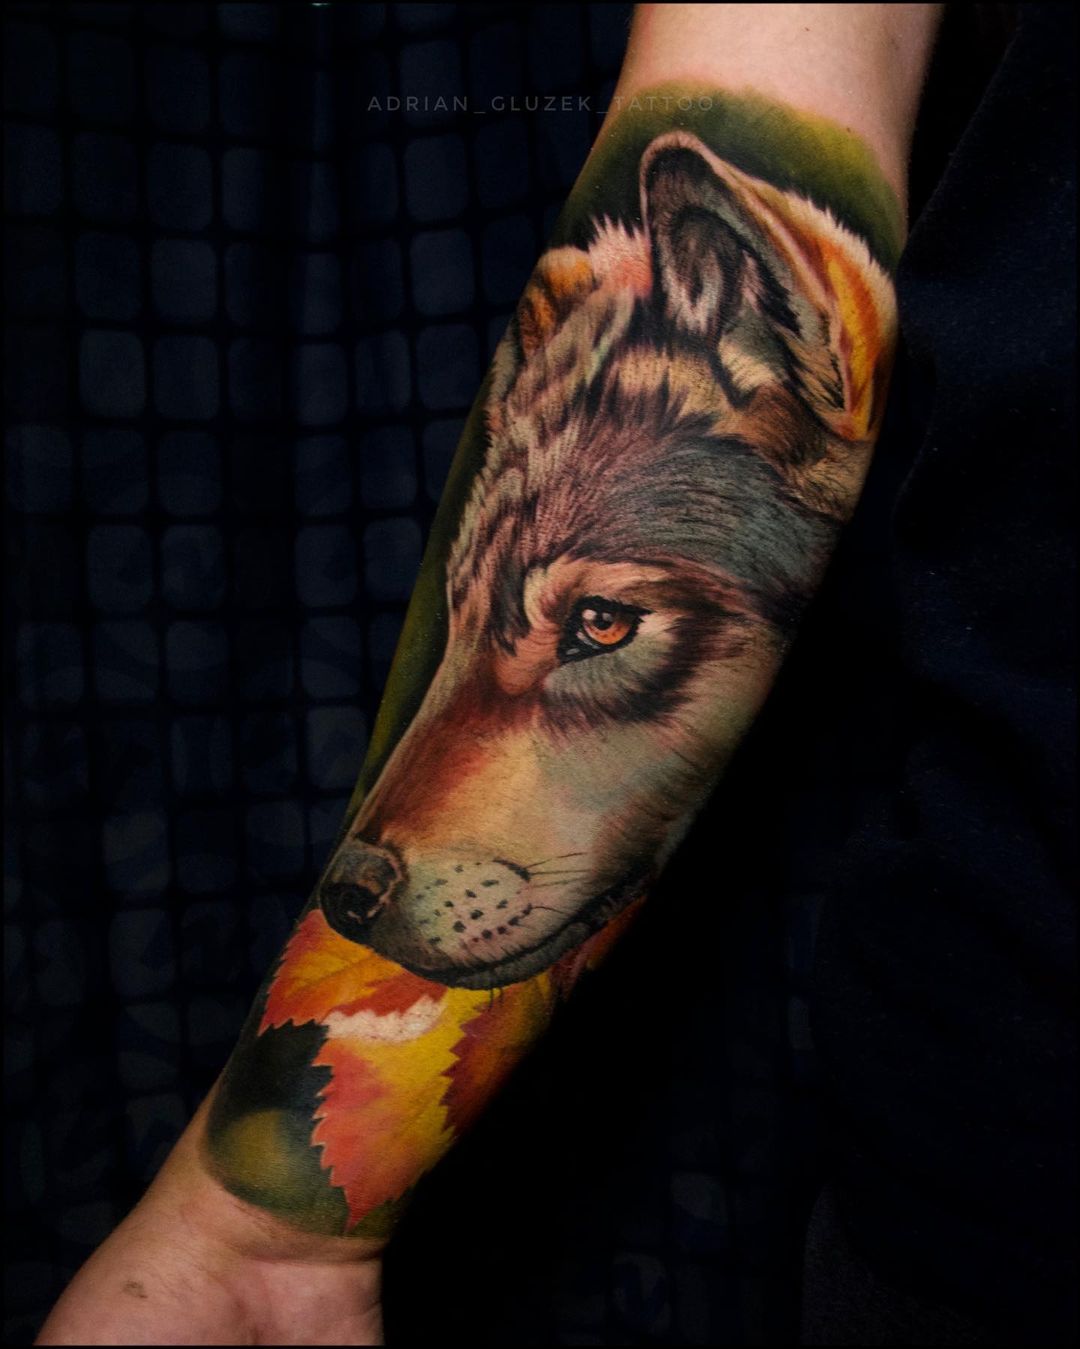 Tatuaje realista de lobo en todo el brazo.